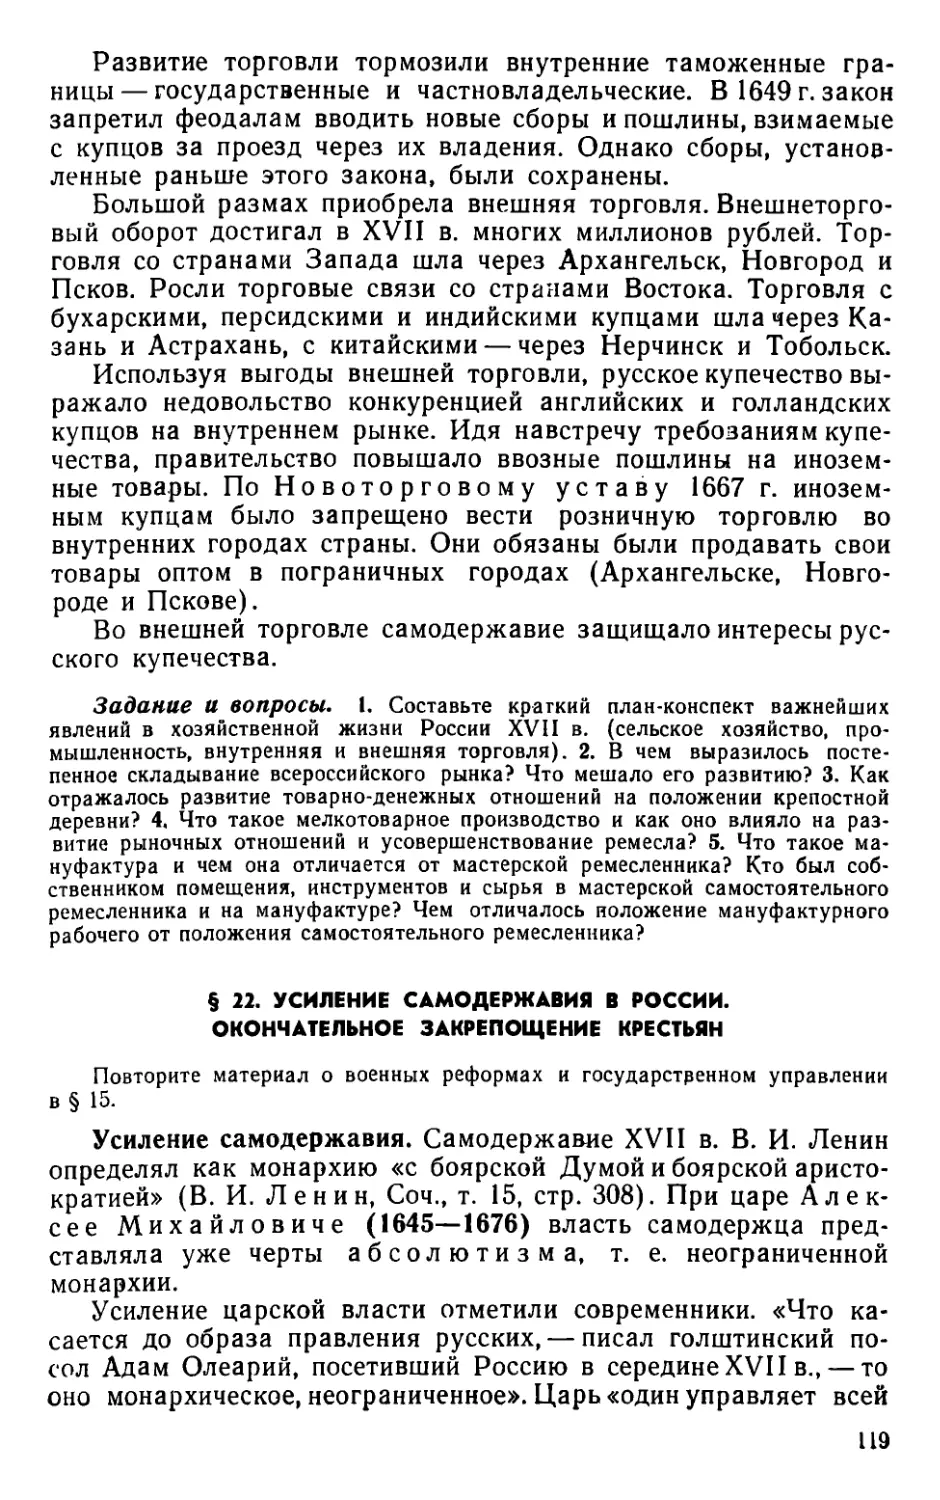 § 22. Усиление самодержавия в России. Окончательное закрепощение крестьян